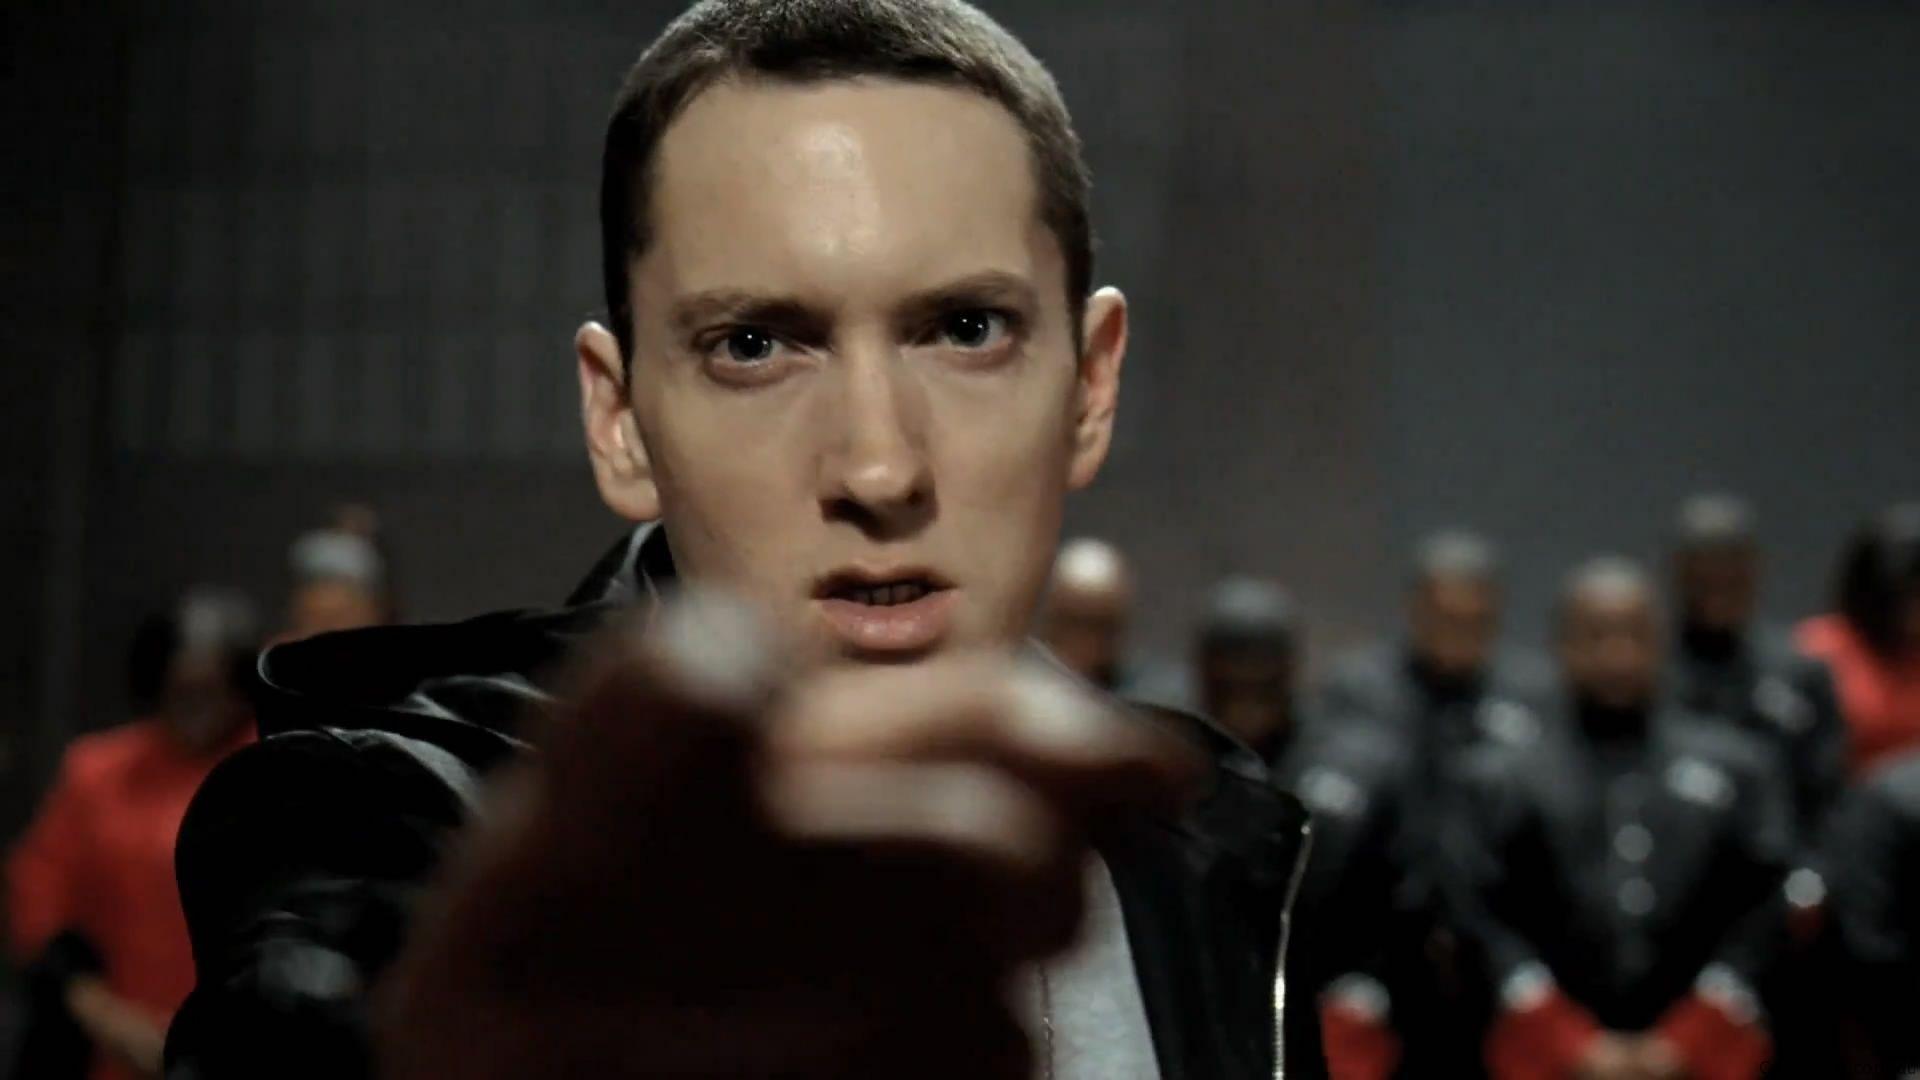 Eminem 2013 Wallpaper: Eminem Fresh New HD Wallpaper Your Popular